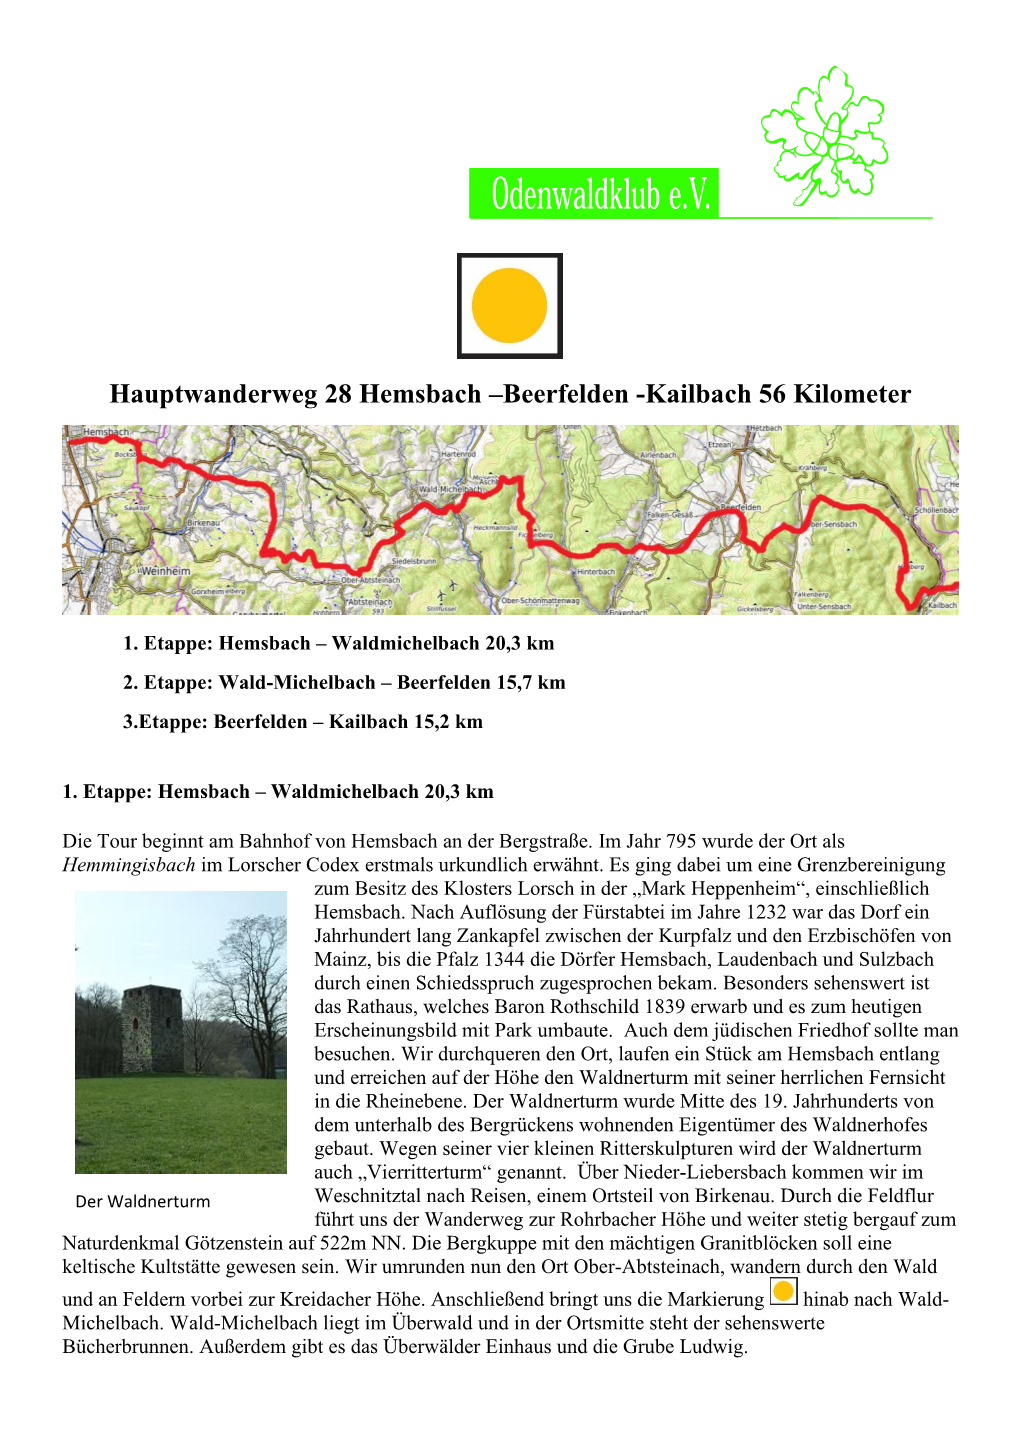 Beerfelden -Kailbach 56 Kilometer